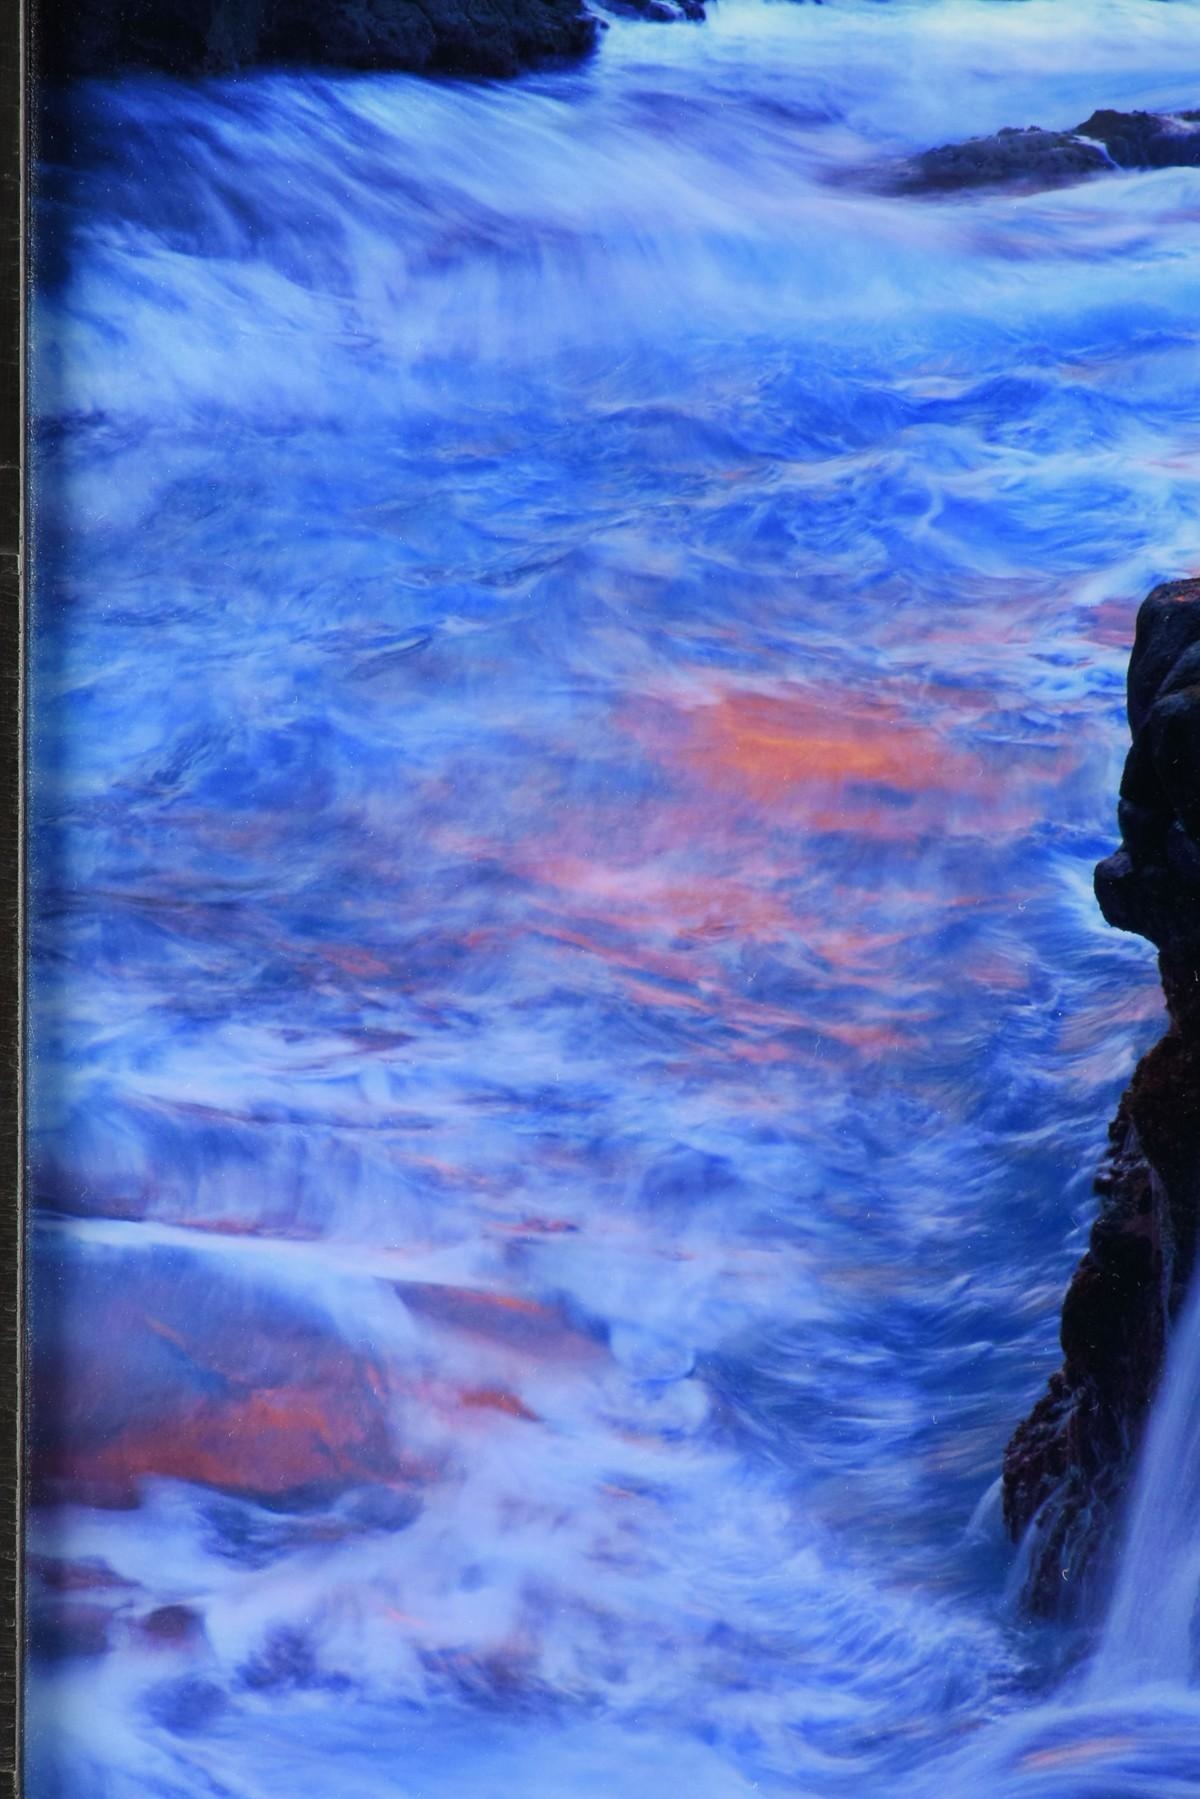 Artwork by Peter Lik, "Kauai Dreaming, Made of color digital print